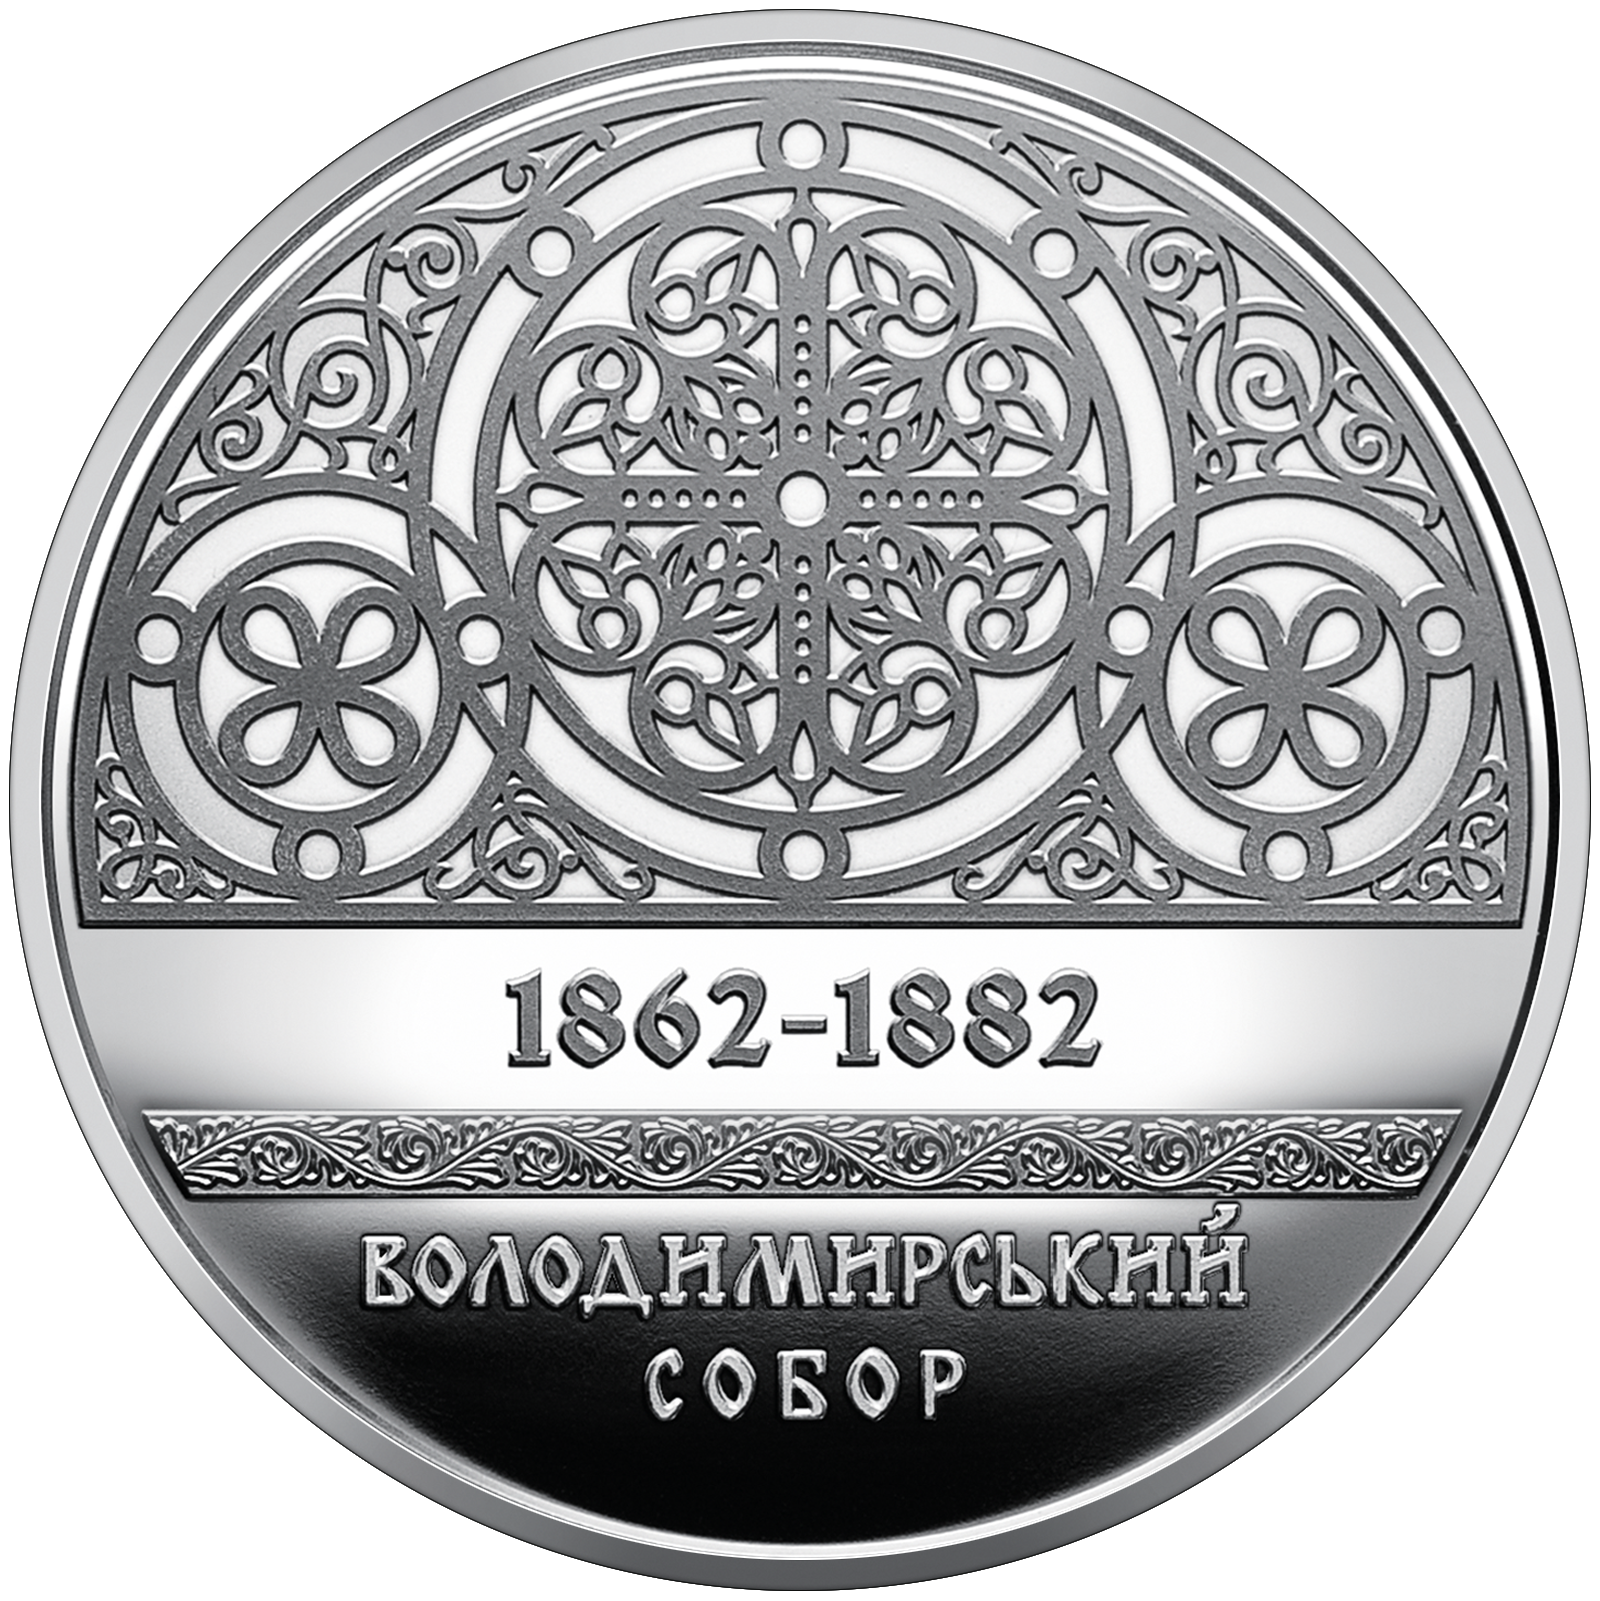 Уникальный орнамент запечатлели на монете